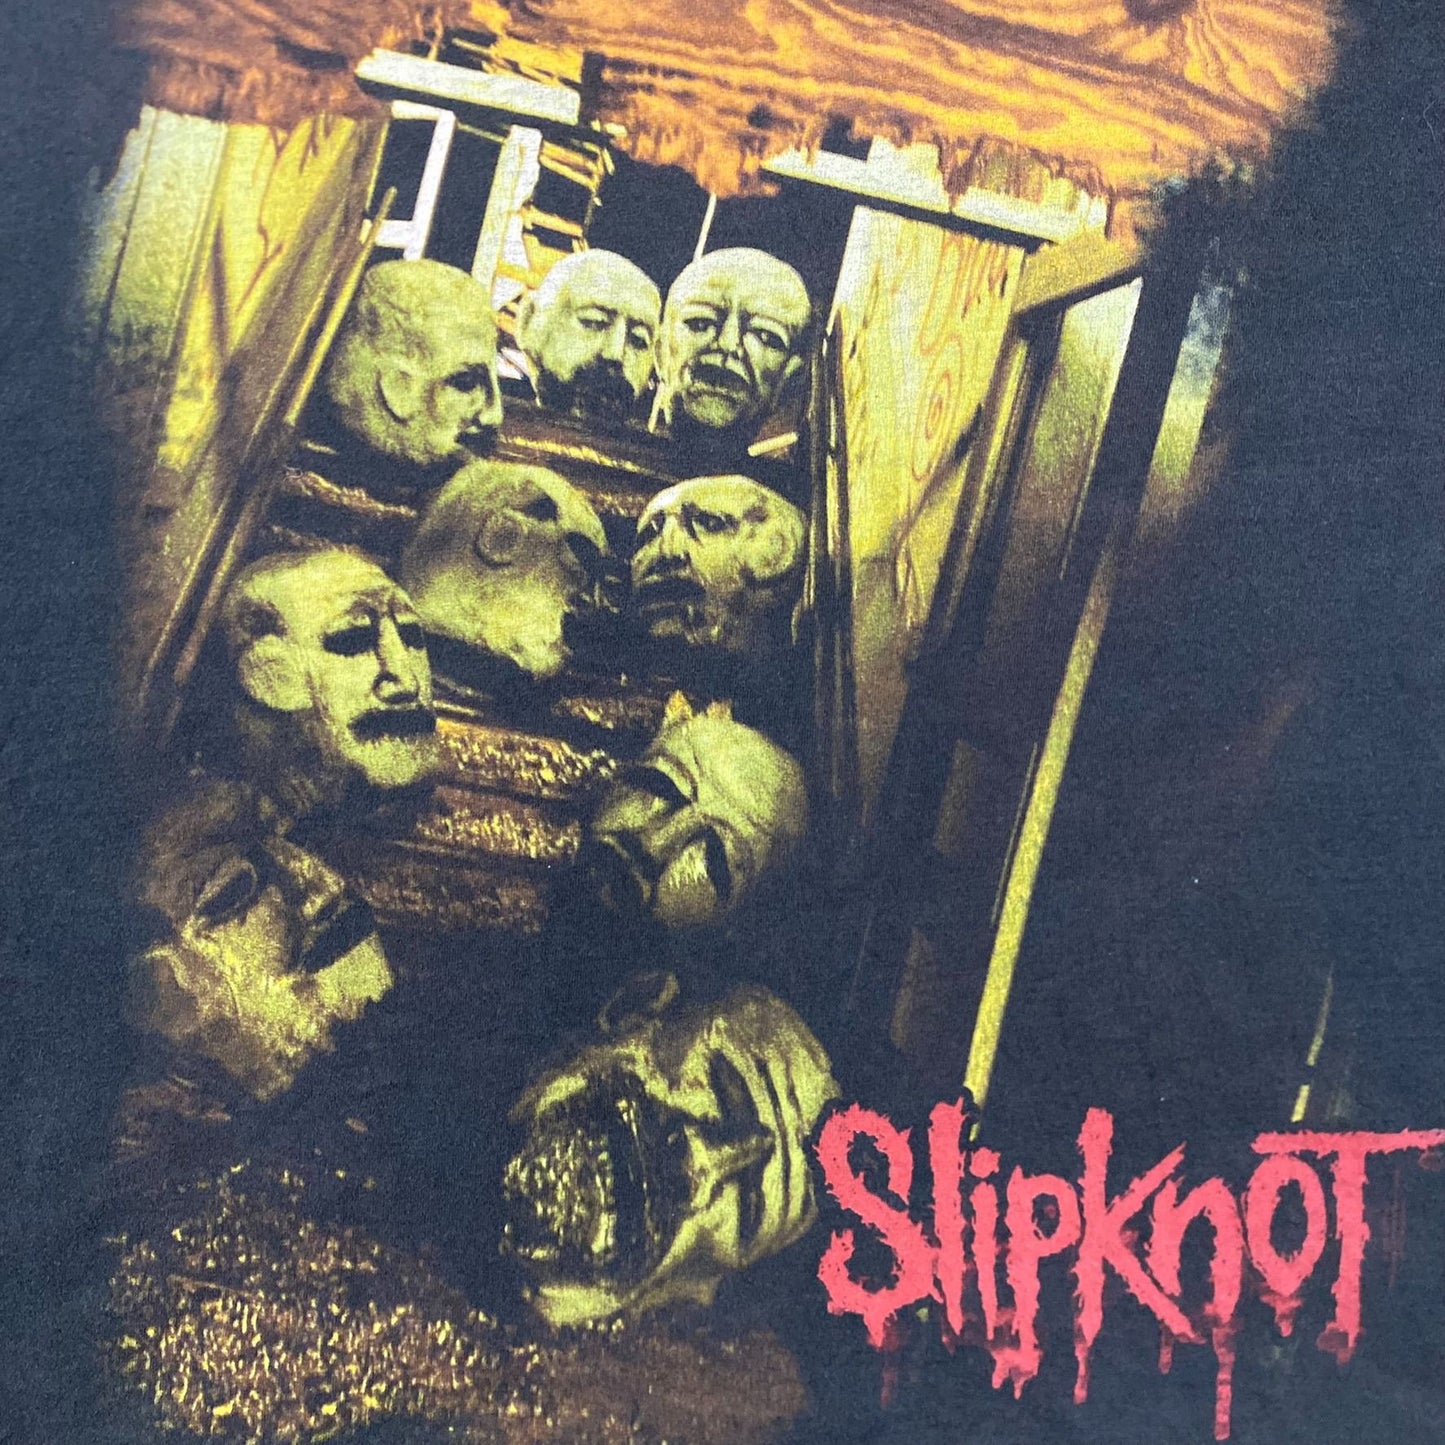 Vintage Y2K Slipknot All Hope Is Gone Metal Band T-Shirt